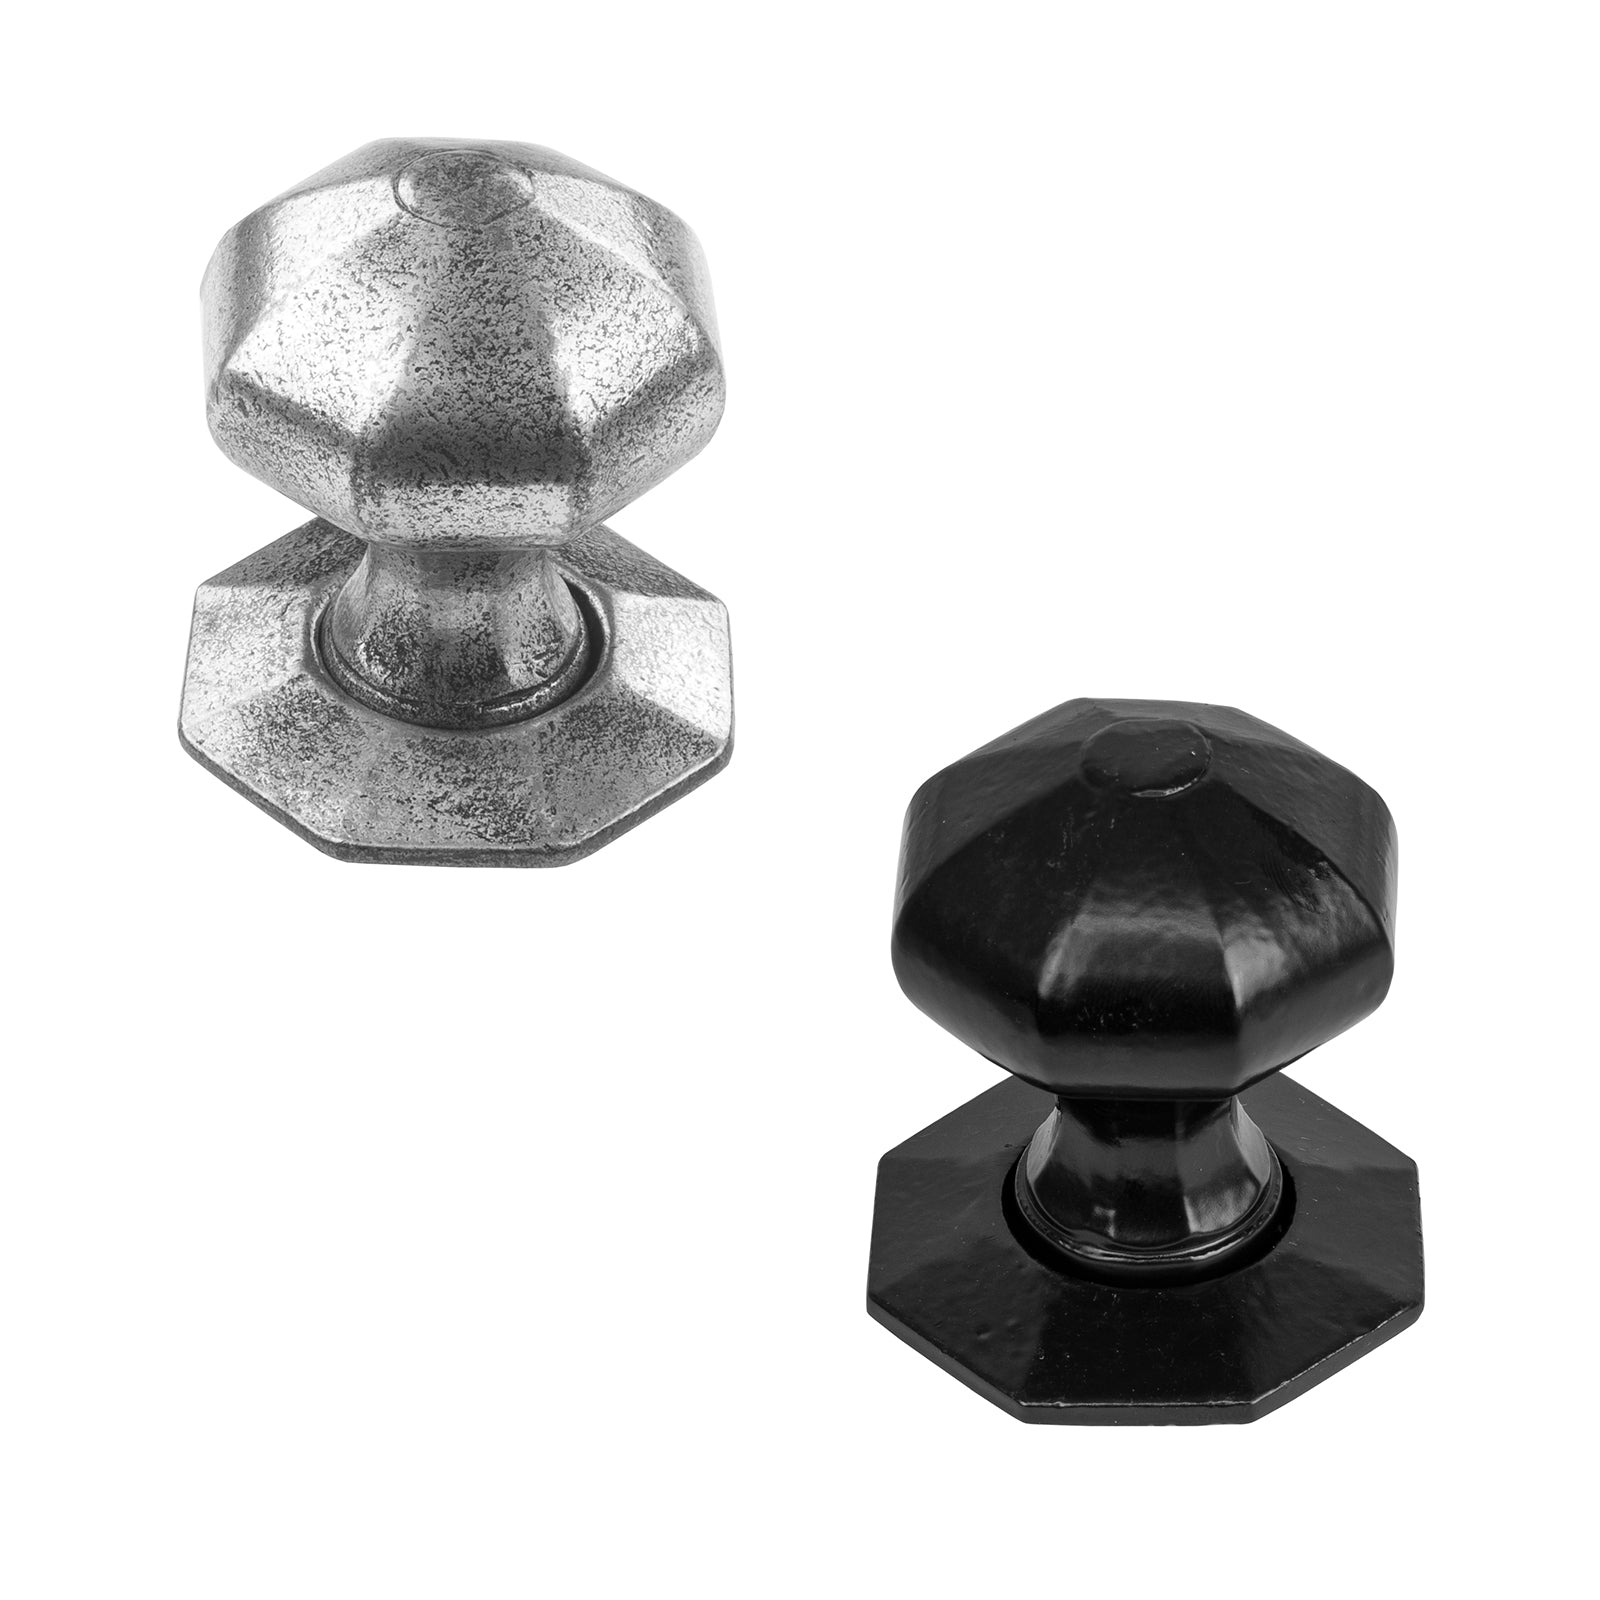 Octagonal cast iron door knobs